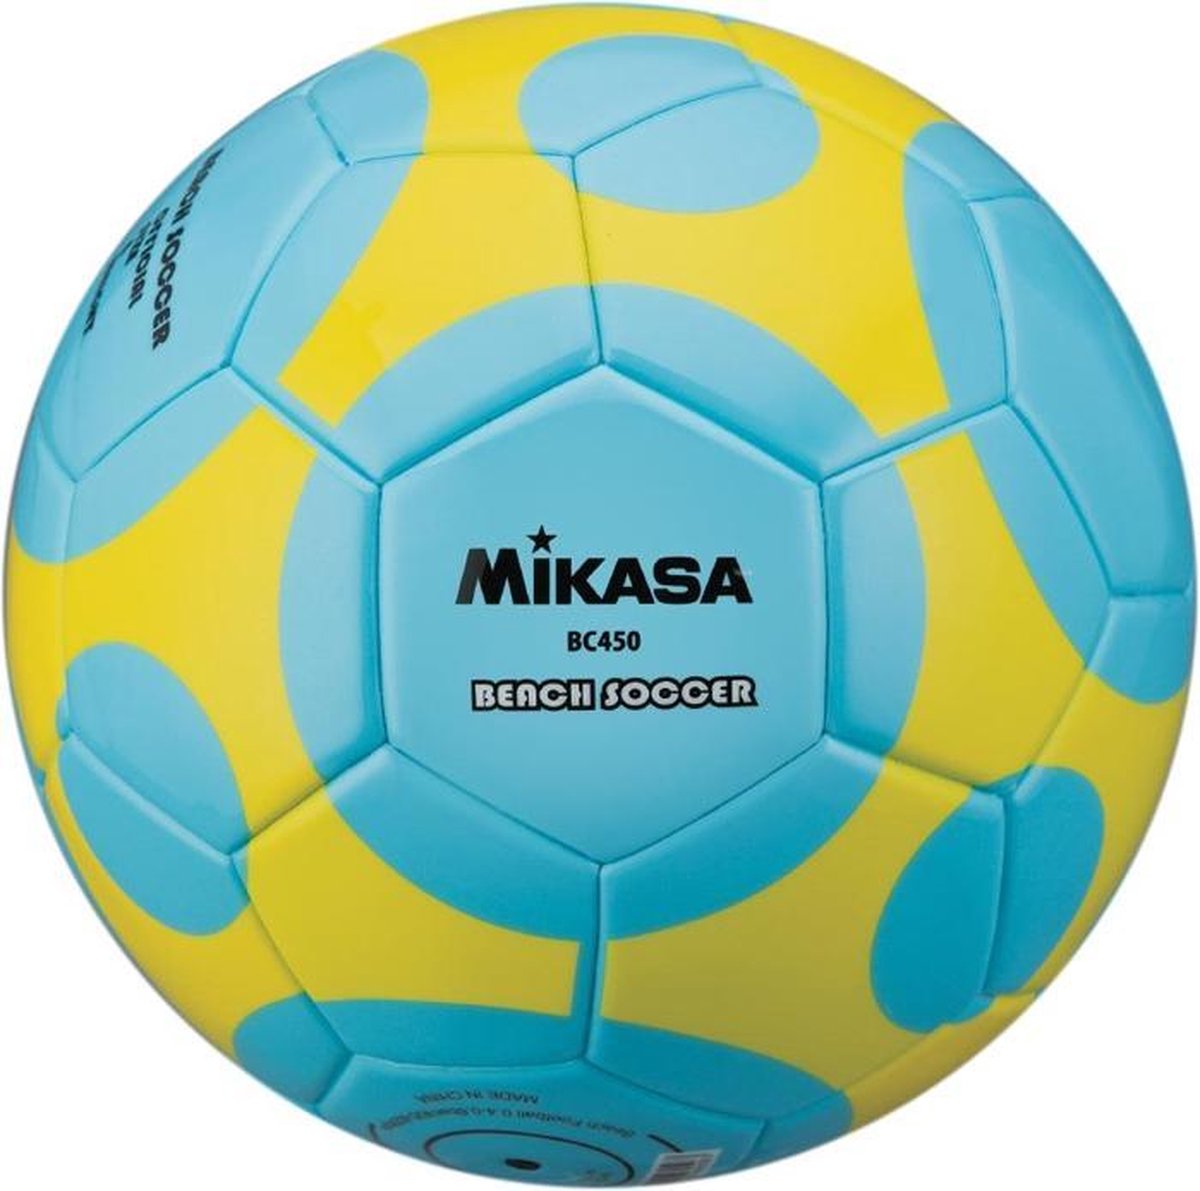 Mikasa Beach Soccer ball